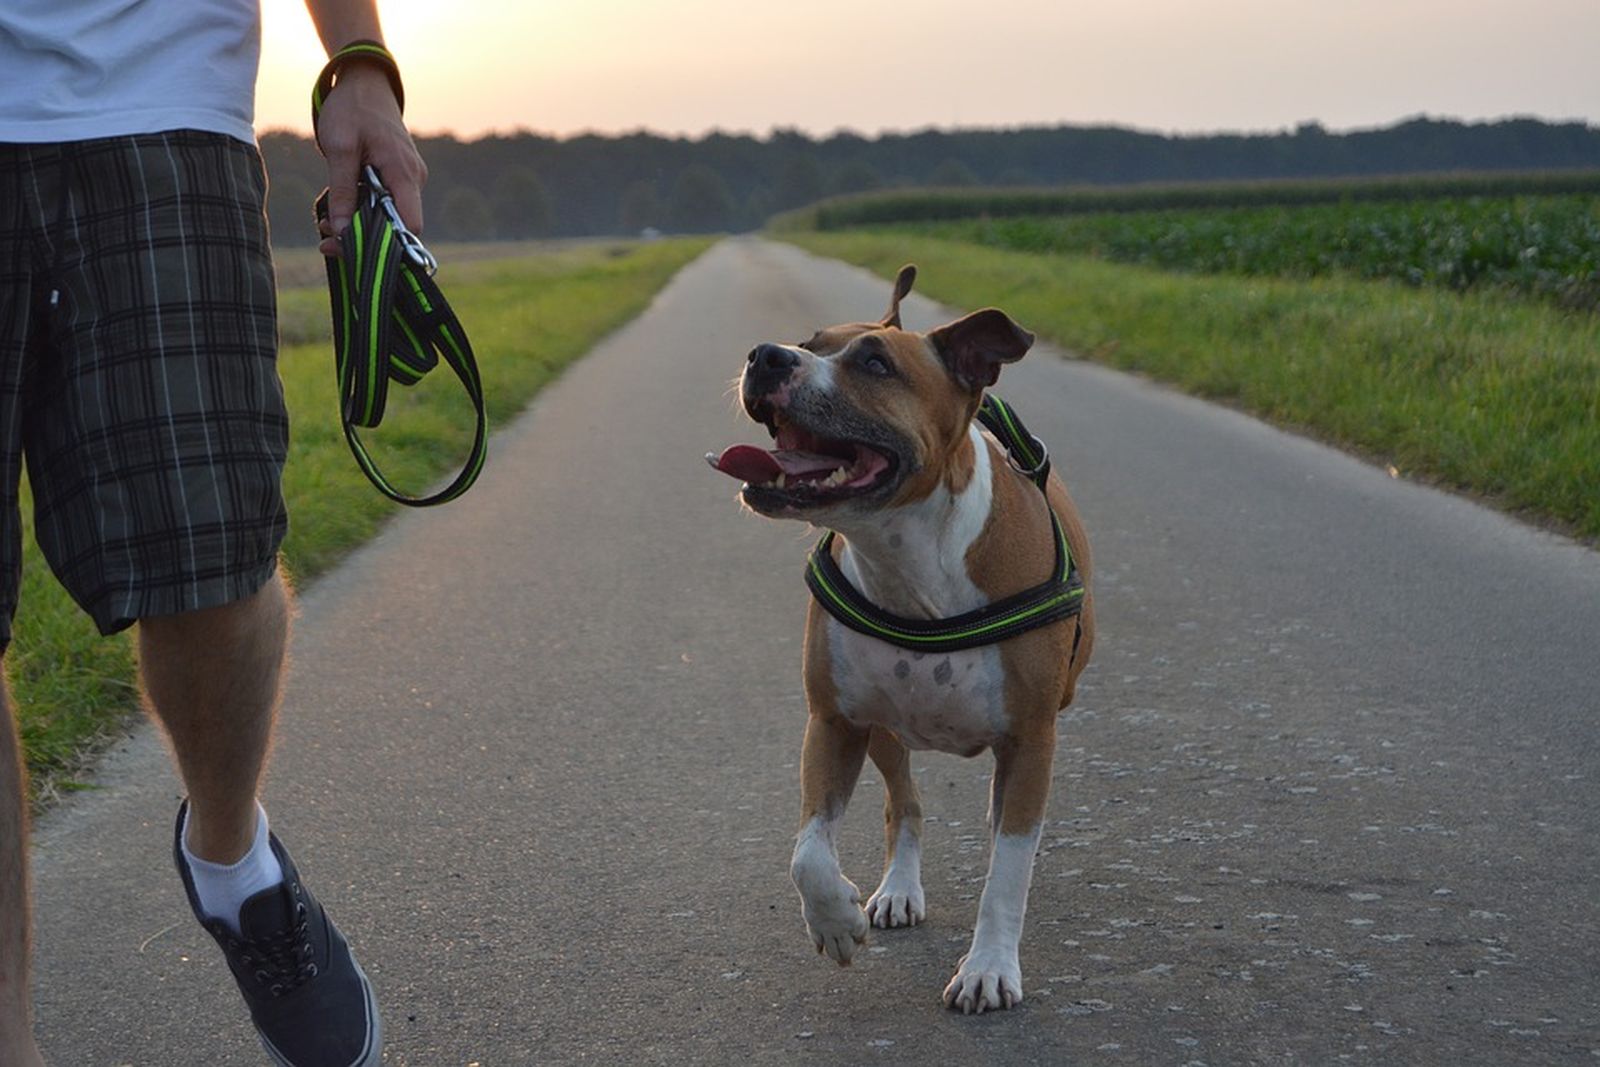 Ein Mann mit karierter kurzer Hose geht auf einem asphaltierten Feldweg mit seinem American Staffordshire Terrier spazieren